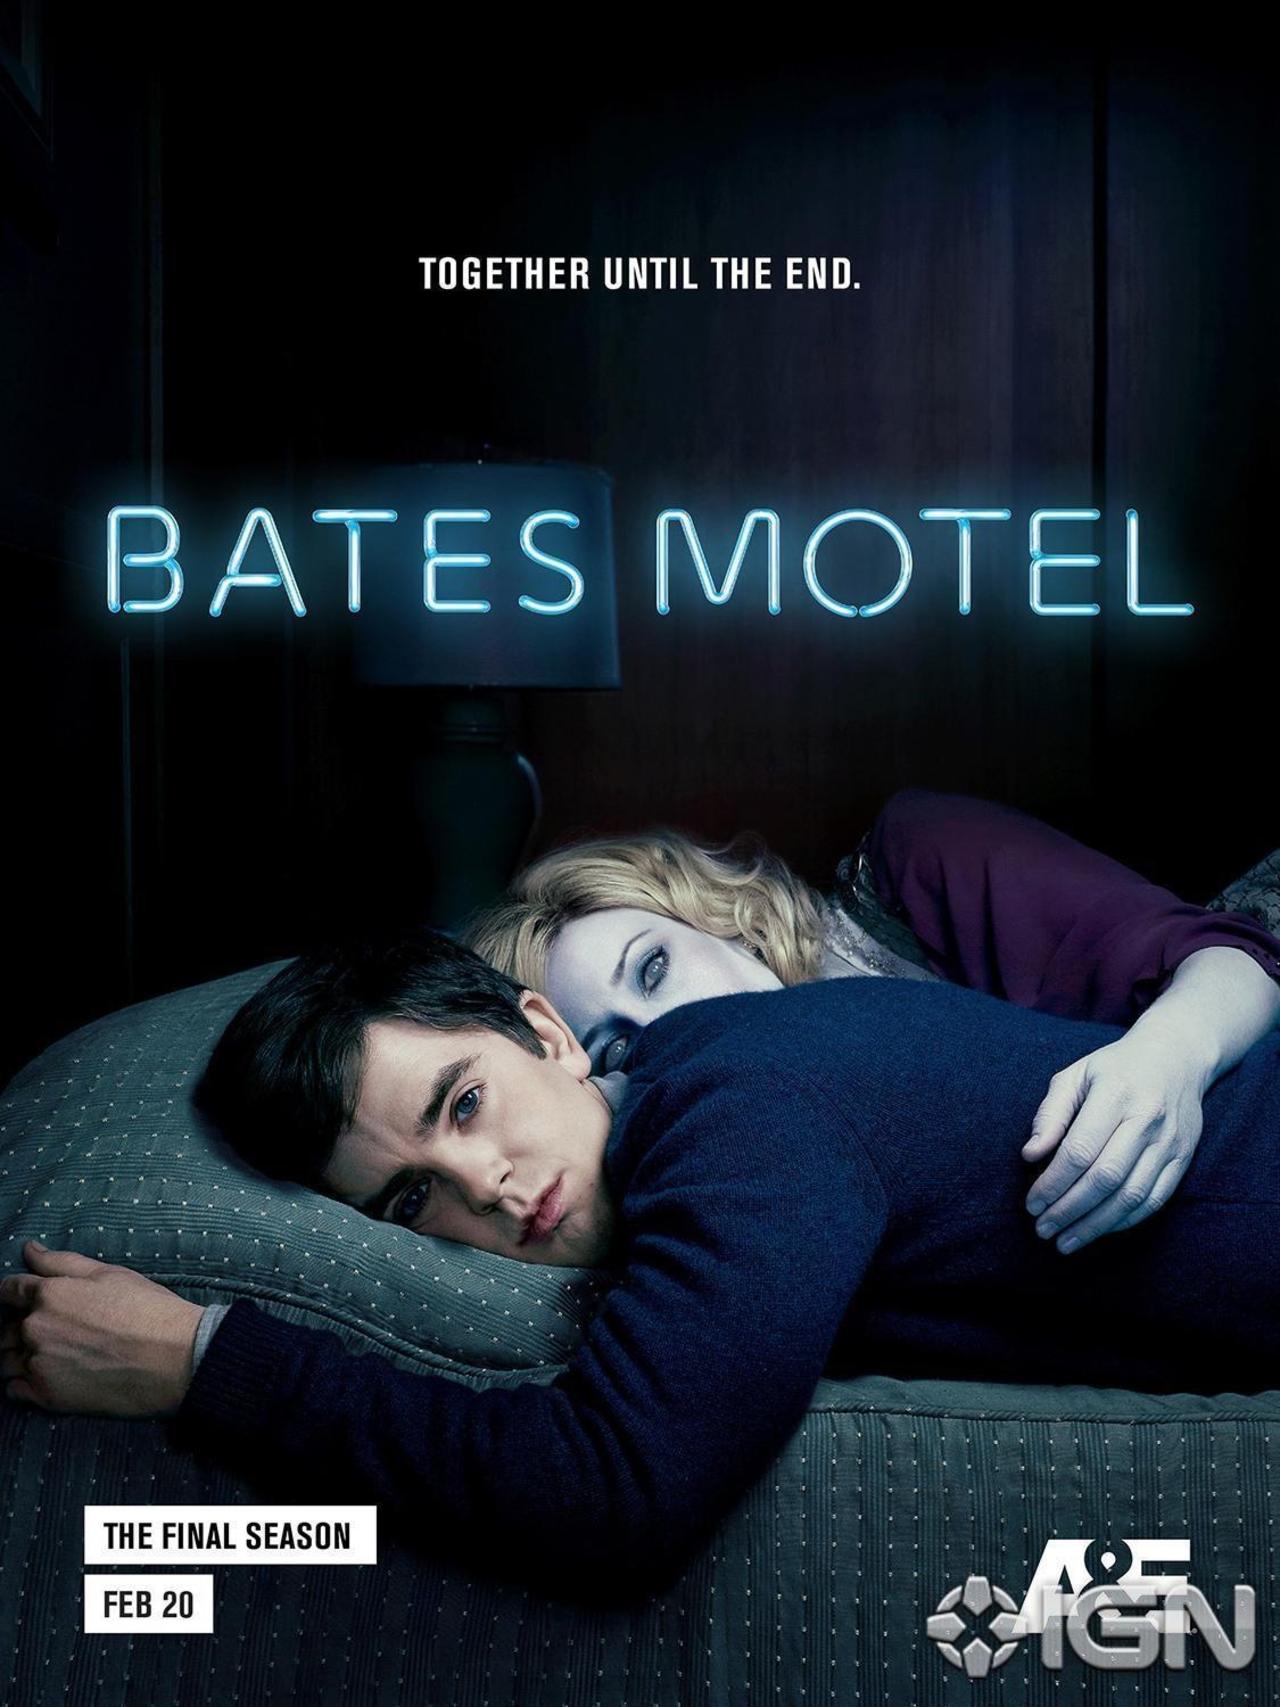 Bates Motel 5 le immagini promozionali mostrano il vero lato Psycho di